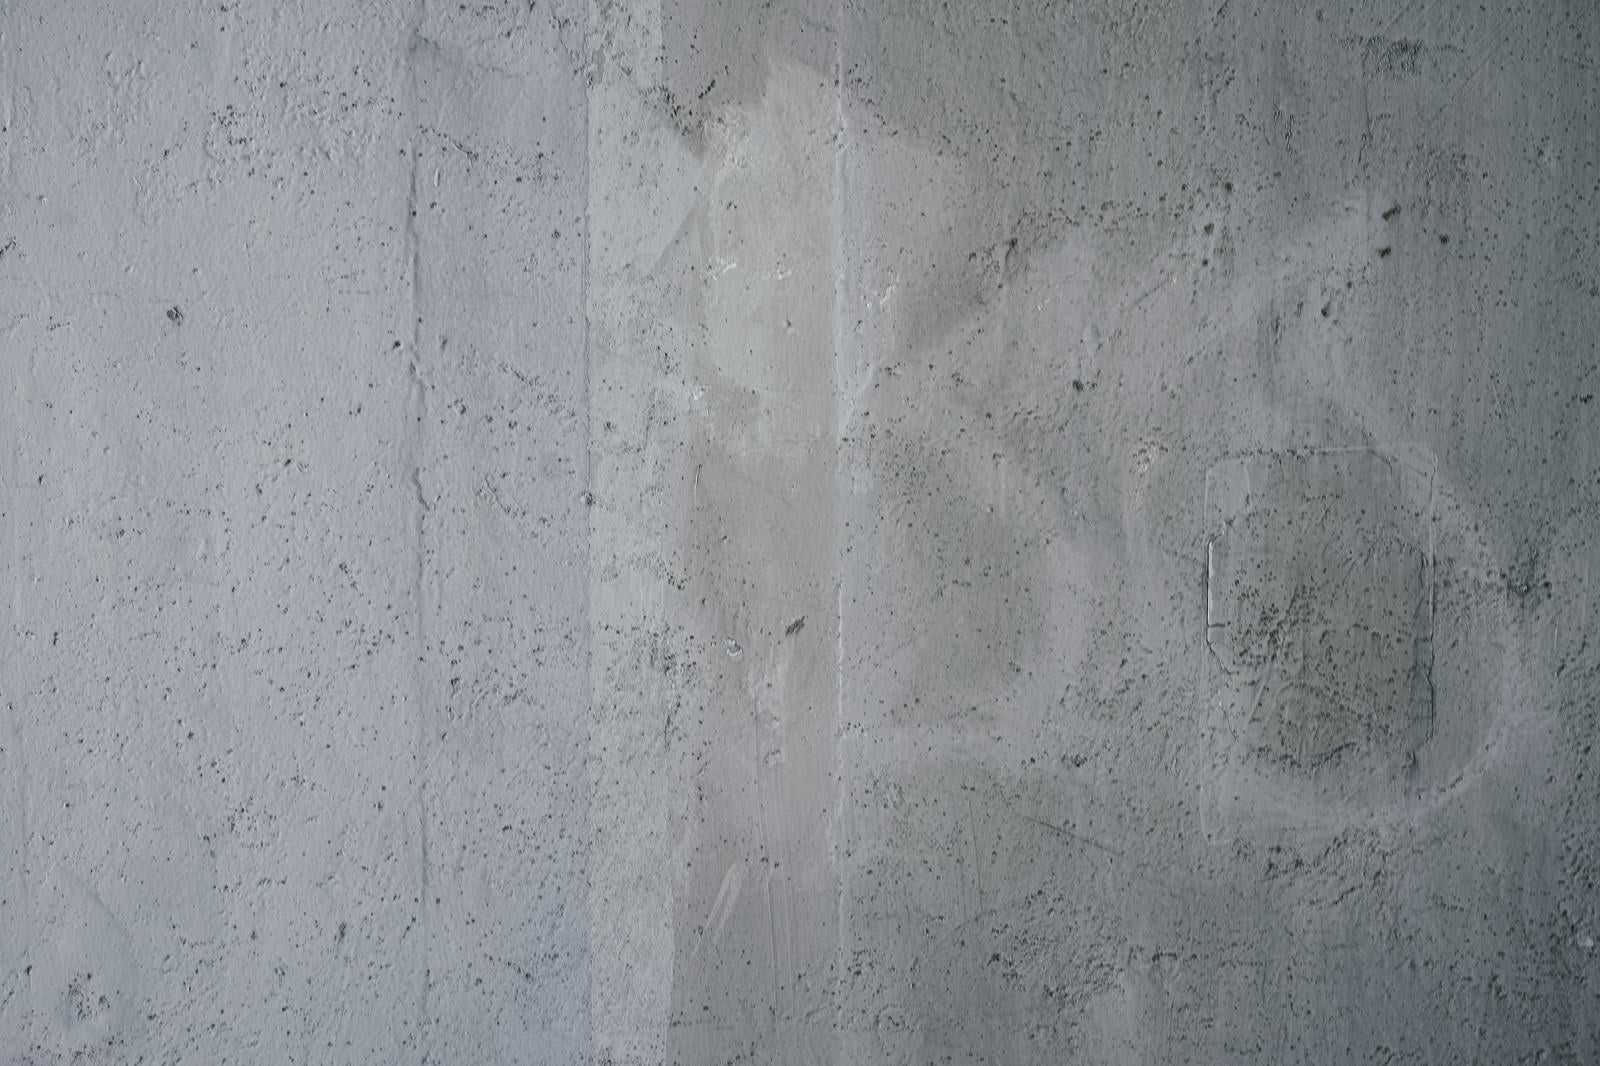 「小さな穴が開いた落書き跡の残るコンクリート壁（テクスチャー）」の写真